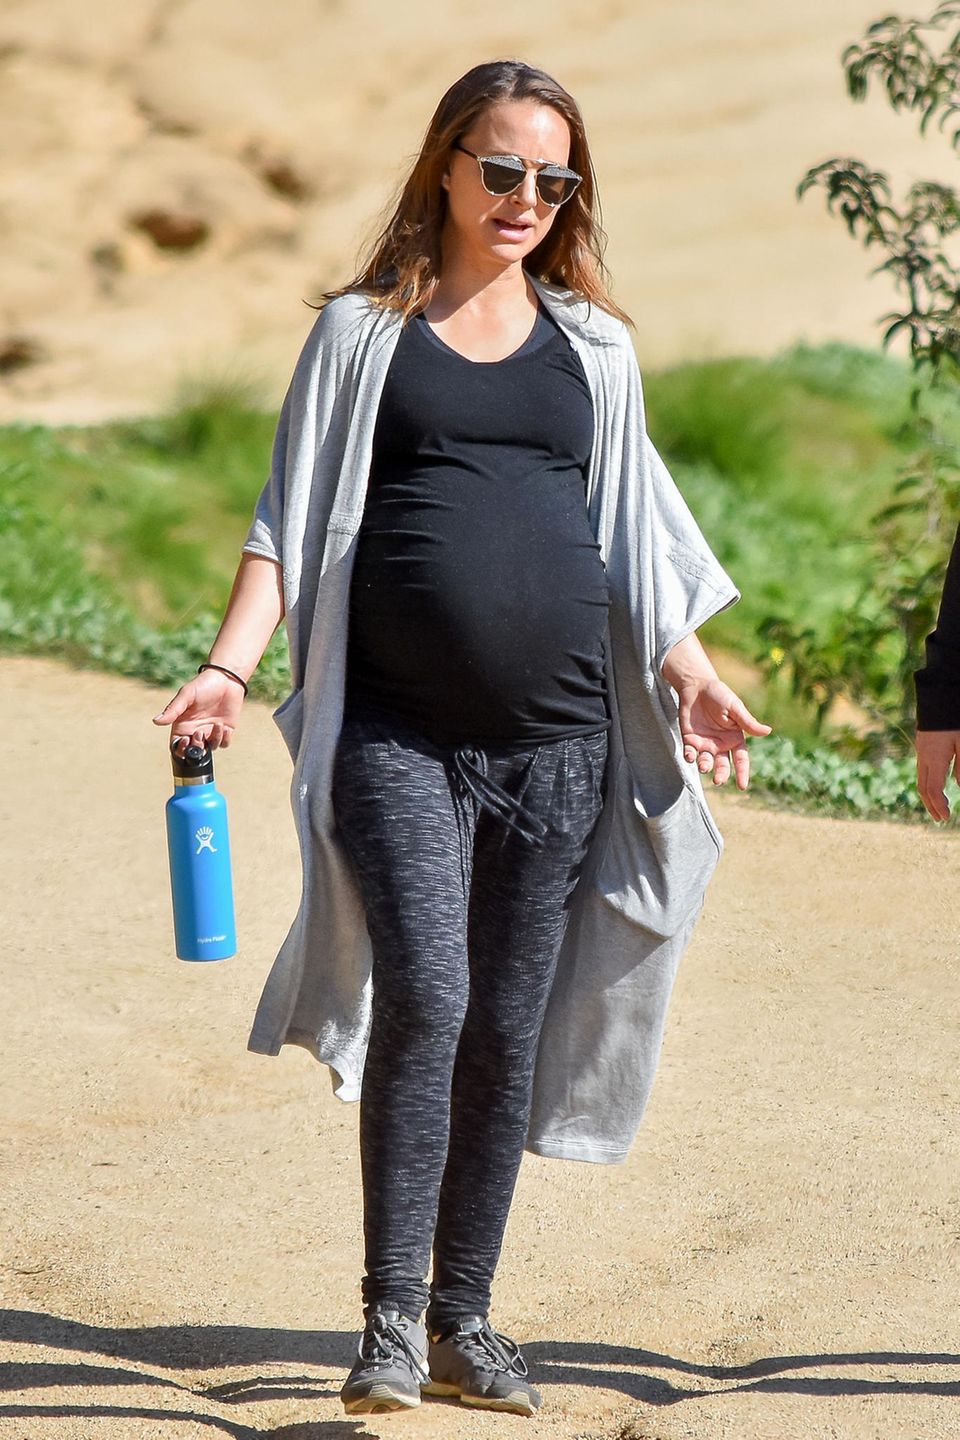 Dass sie jederzeit ihr Baby kriegen könnte, hält Natalie Portman nicht davon ab, einen ausgedehnten Hike zu unternehmen. Ihr Outfit ist dementsprechend sportlich und bequem: Zur anthrazitfarbenen Leggings kombiniert sie ein schwarzes Top, einen luftigen Cardigan und eine stylishe Sonnenbrille. Natürlich darf auch die Wasserflasche nicht fehlen.